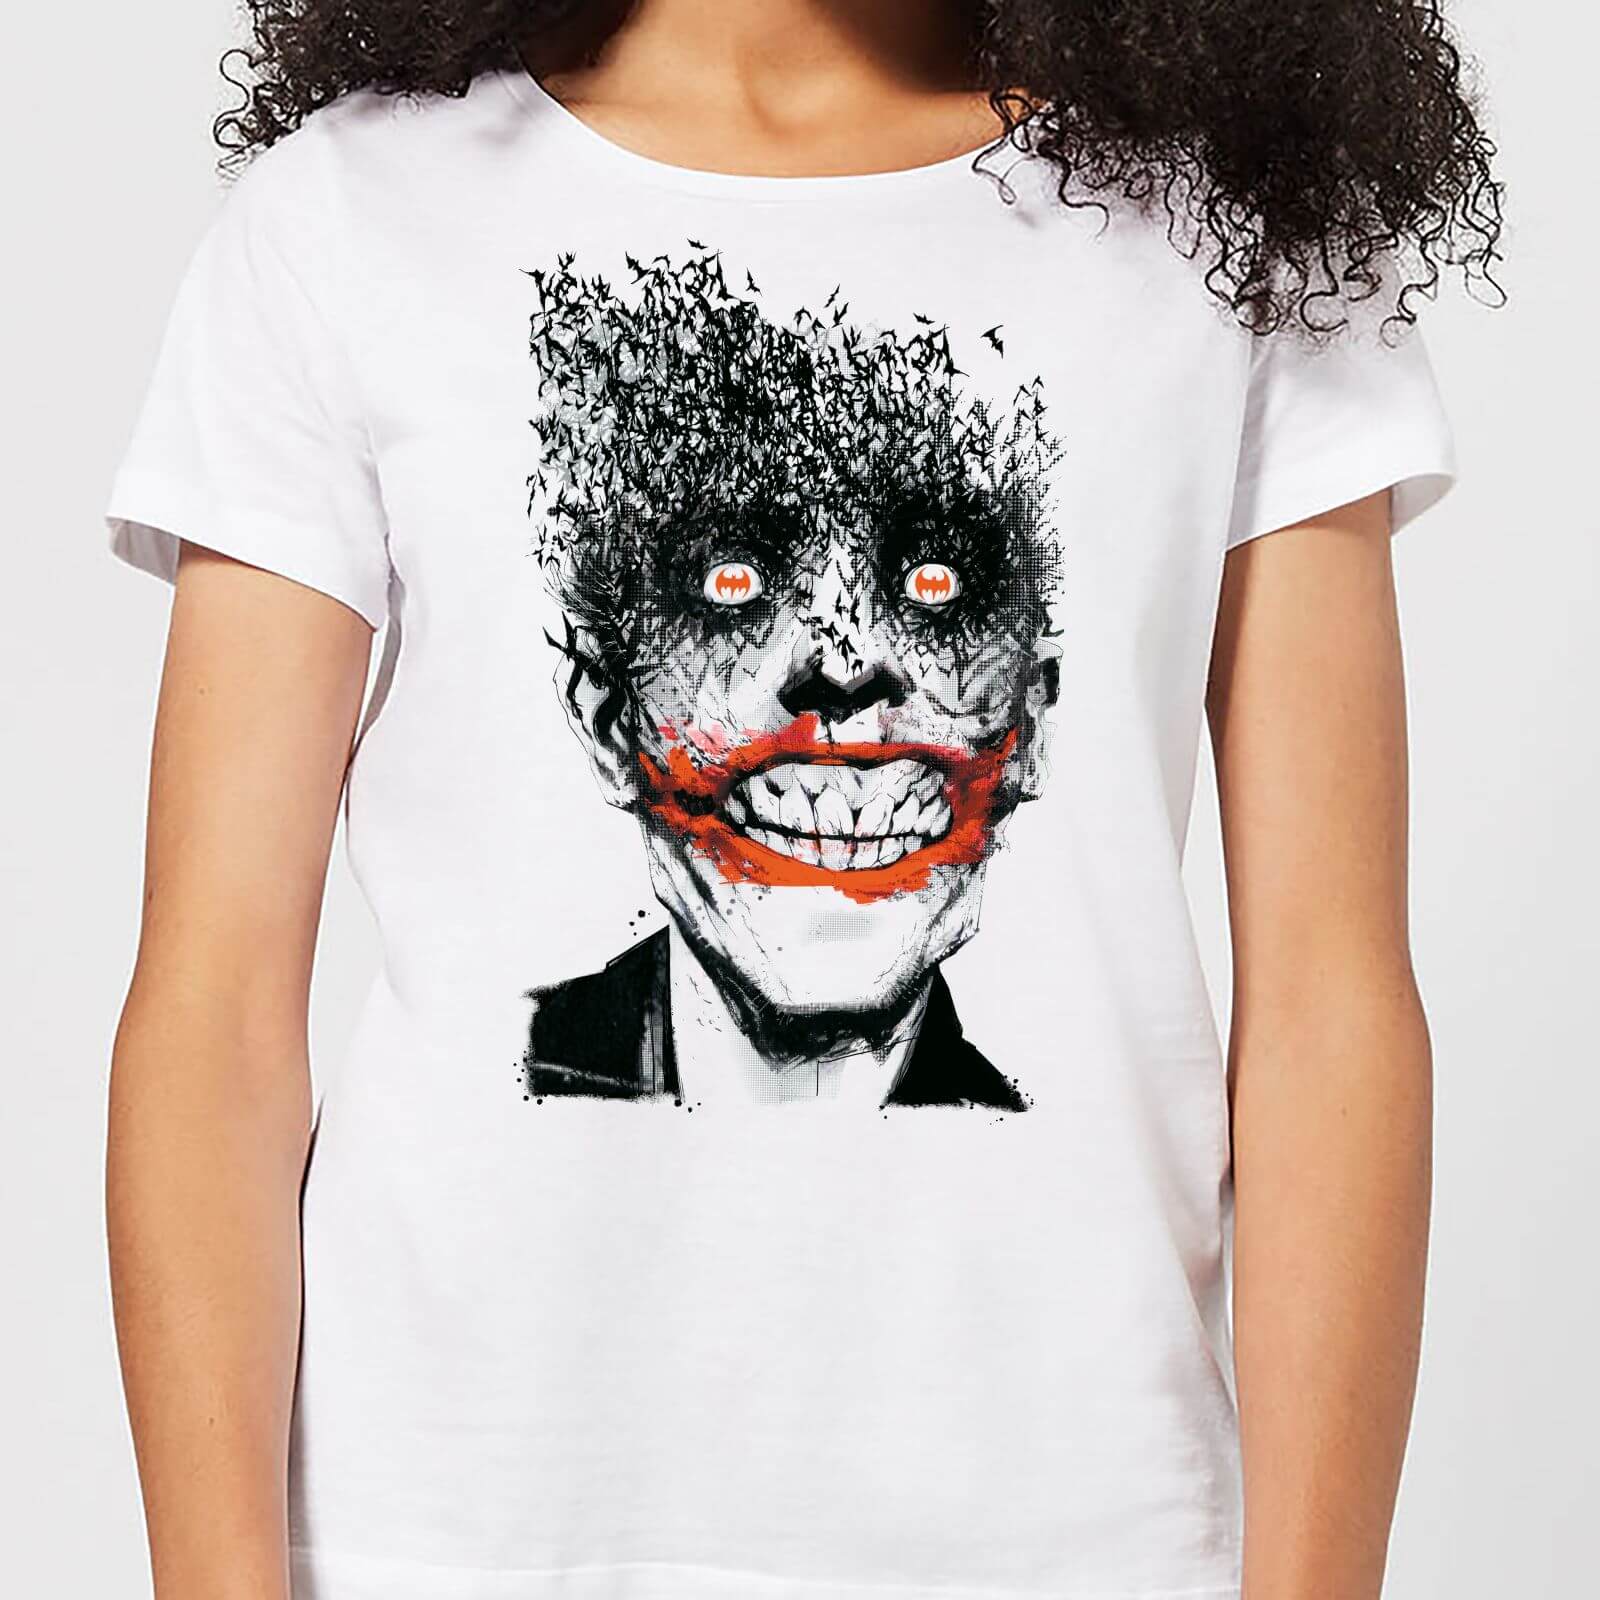 t-shirt dc comics batman joker face of bats - bianco - donna - xxl